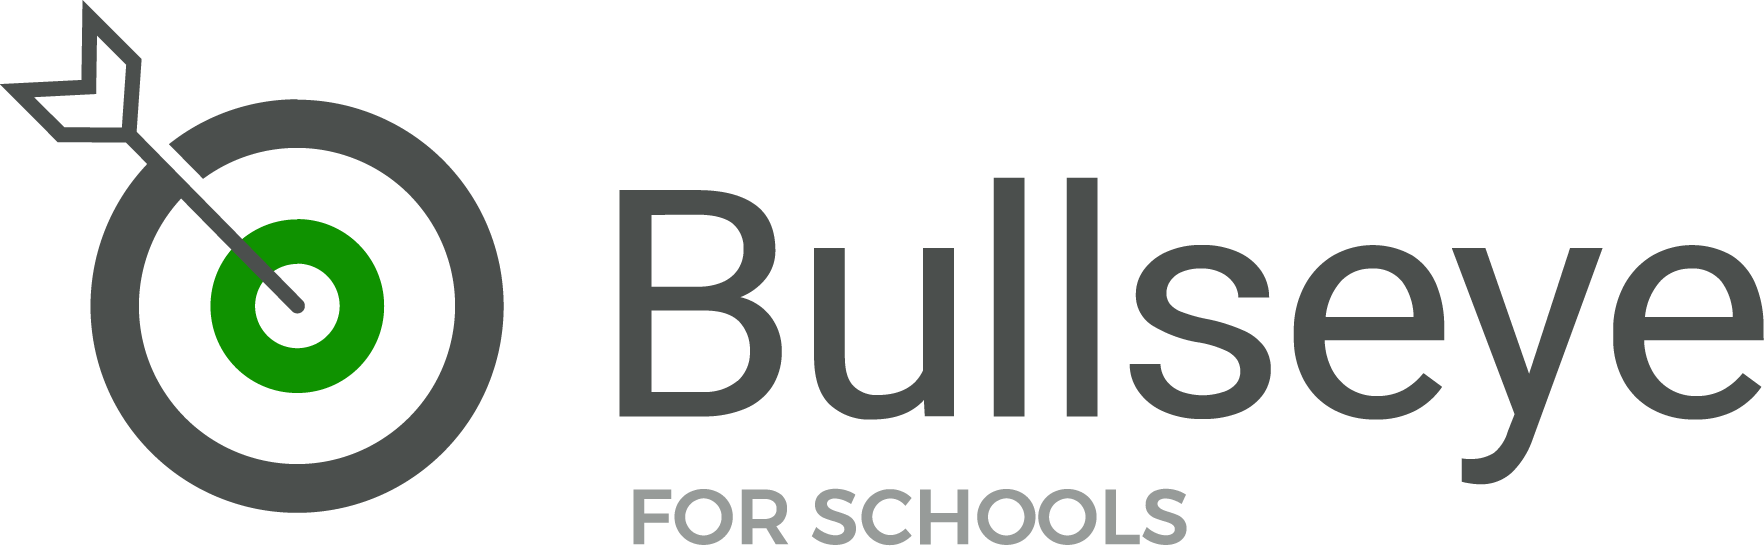 bullseye_logo